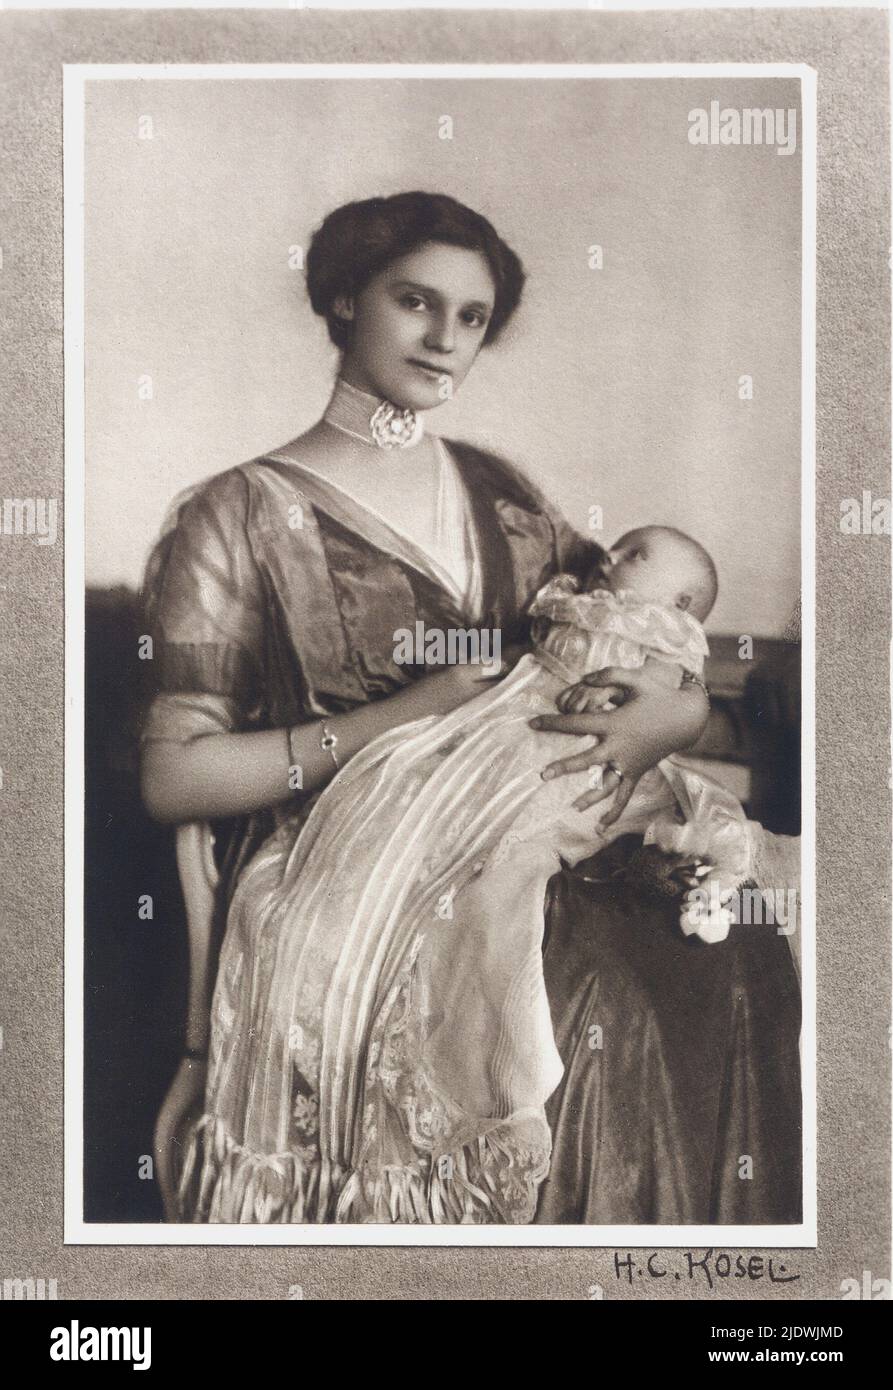 1914 ca. : Die letzte Kaiserin ZITA Maria von BORBONE - PARMA ( Prinzessin von Parma , 1892 - 1989 ) , verheiratet mit dem letzten Kaiser Kaiser Karl I. Franz Josef ( 1887 - 1922 ) von ÖSTERREICH und König von Ungarn , in diesem Porträt mit der Erherzogin-Tochter ADELHEID . Foto von H. C. Kosel , Wien - ASBURGO - ABSBURGO - ABSBURG - ASBURG - HABSBURG - Impero Austro-ungarico - UNGHERIA - Bebé - collana - Halskette - gioielli - gioiello - Schmuck - Schmuck - Familie - Famiglia - ritratto - reali austriaci - königliches österreichisch - nobili - Adel - nobiltà - BOURBON - madre e figlia - Mutter - ich Stockfoto